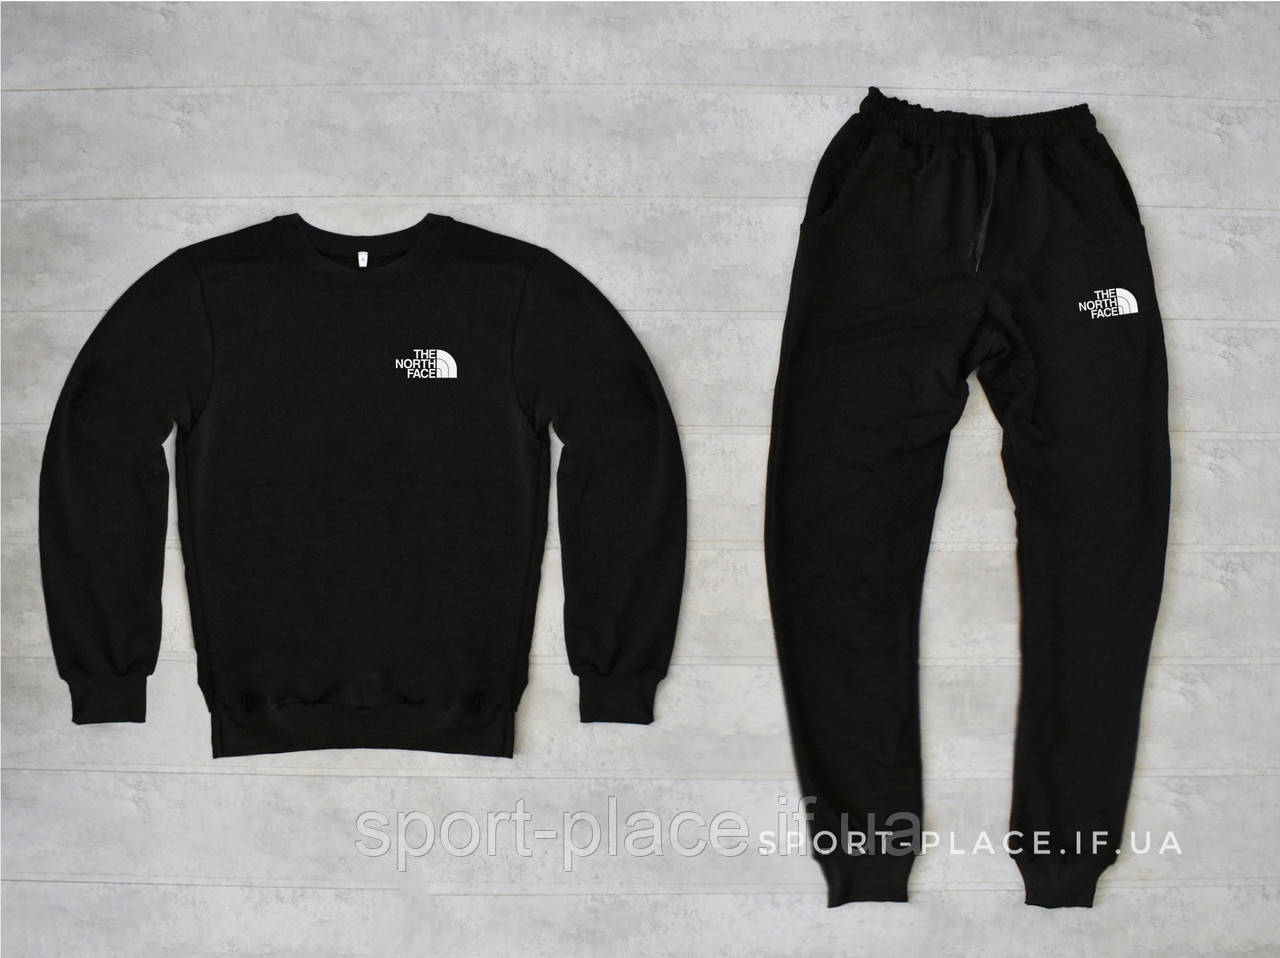 Чоловічий спортивний костюм The North Face (Норс Фейс) чорний світшот ,штани (толстовка лонгслив худі)